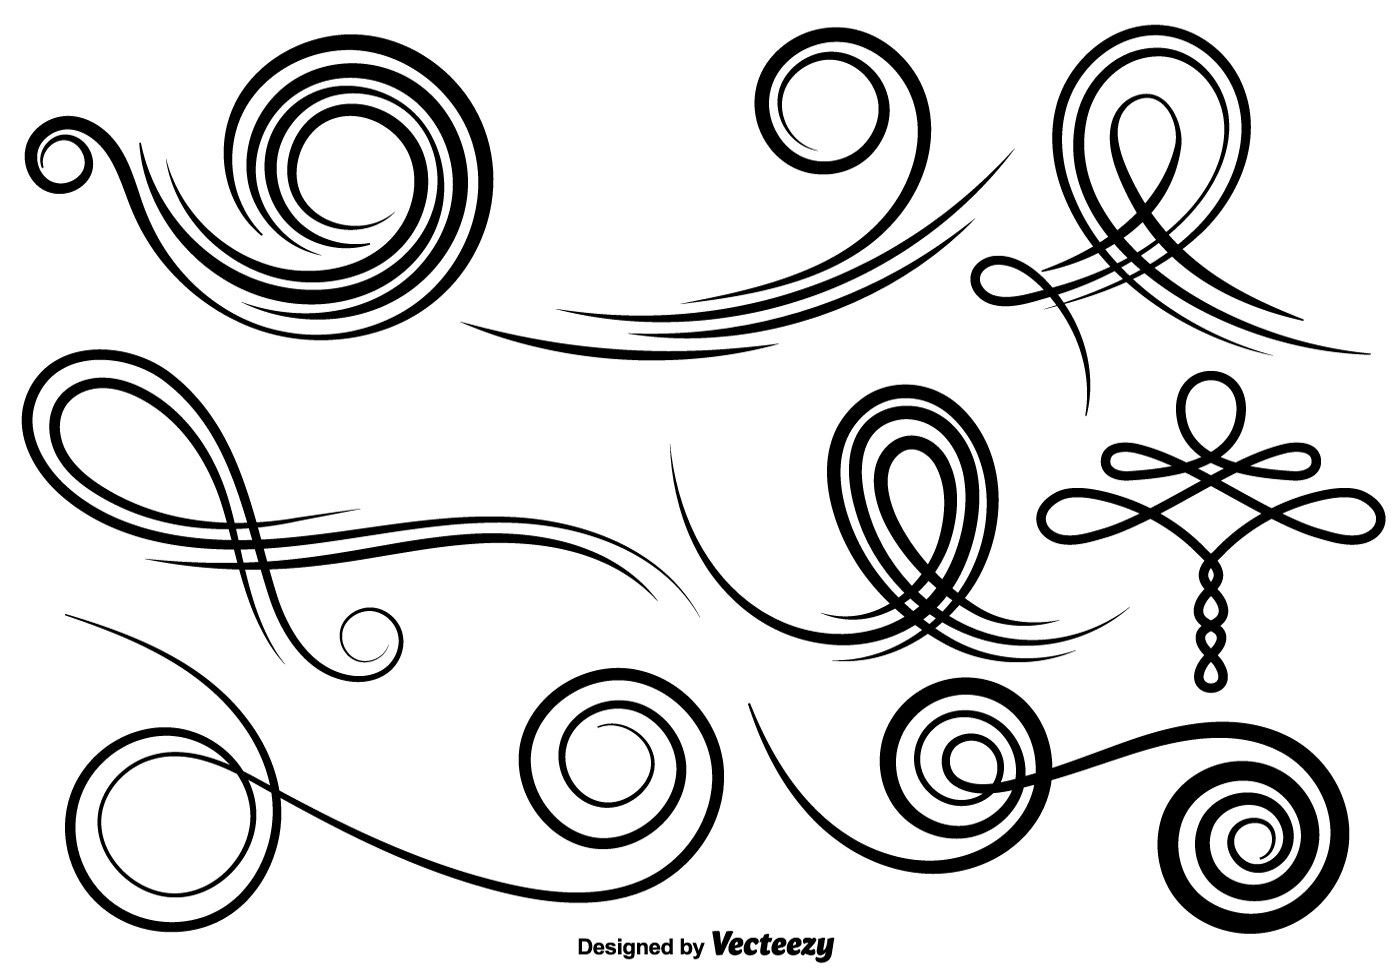 Download Vector Set Of Swirls - Download Free Vectors, Clipart ...